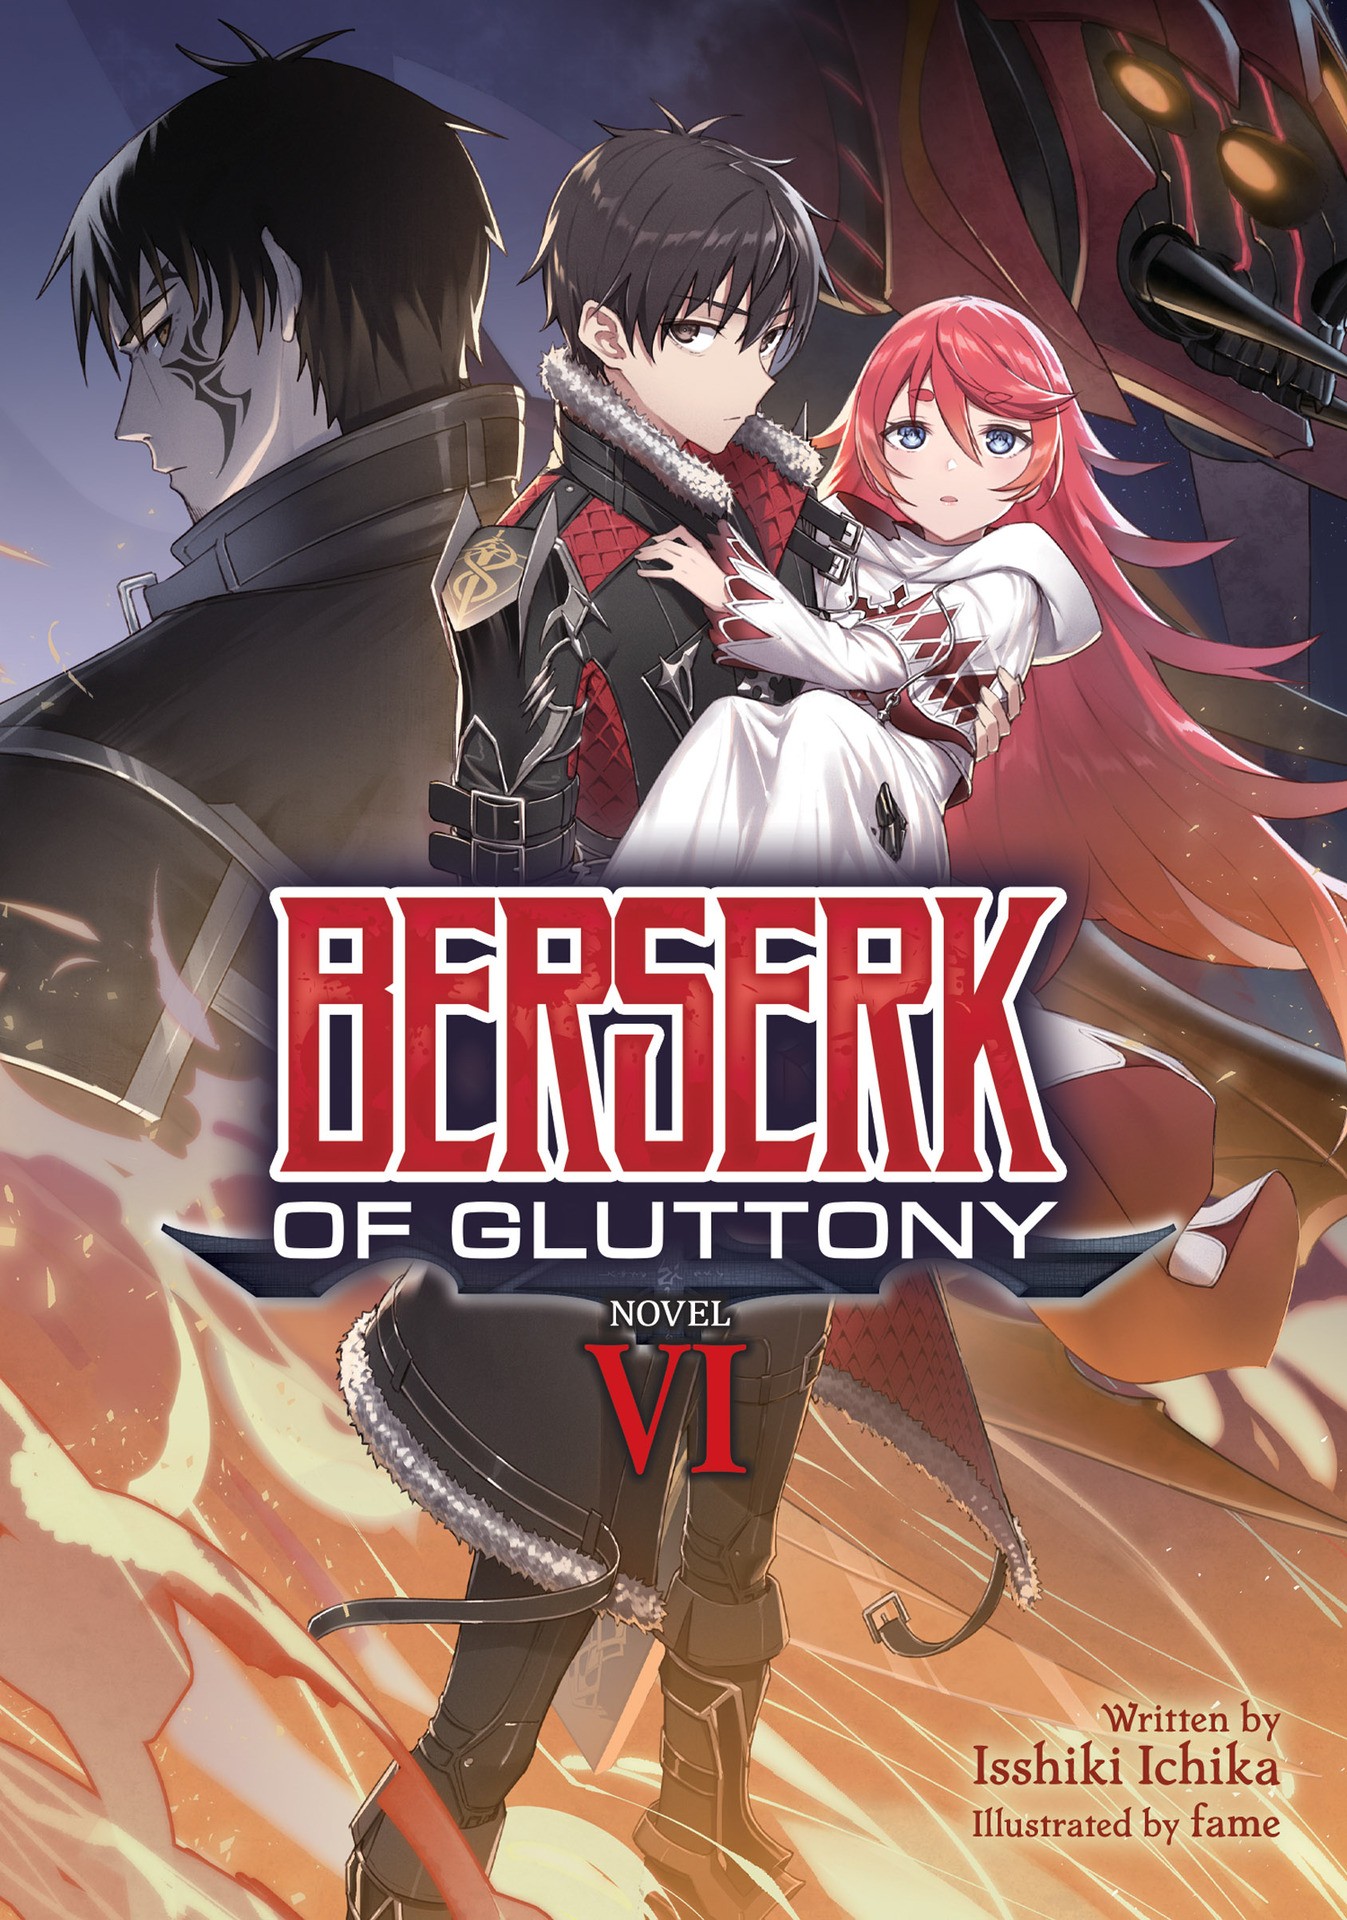 Berserk of Gluttony (Light Novel) Vol. 1 eBook by Isshiki Ichika - EPUB  Book